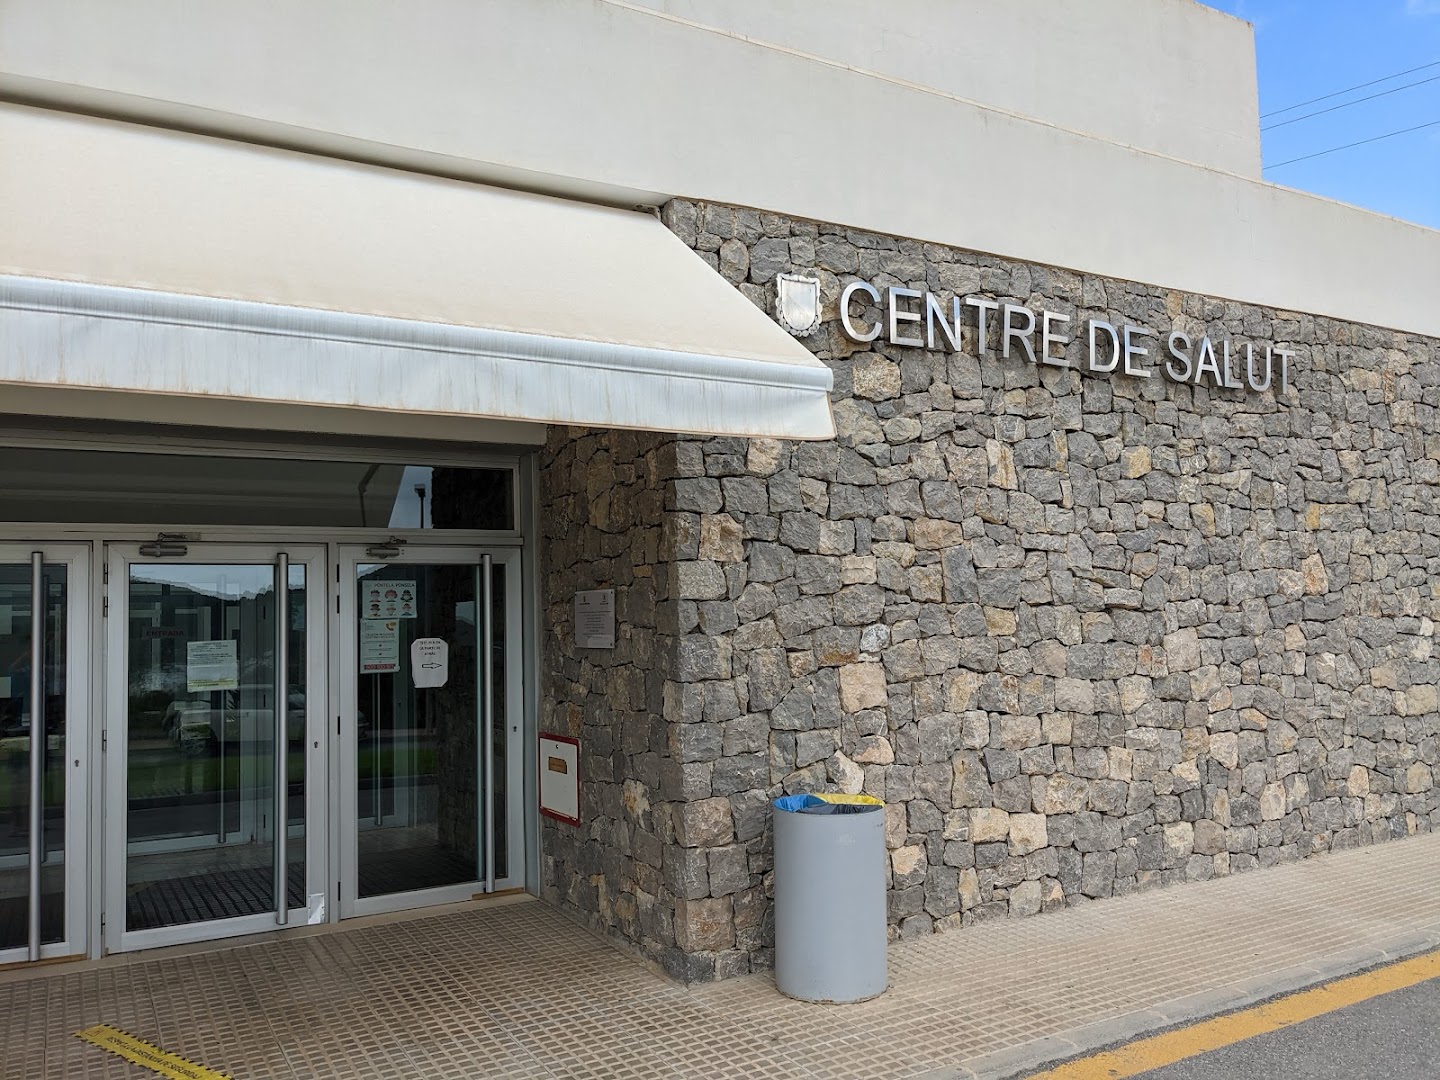 Centro de Salud de Sant Josep de sa Talaia